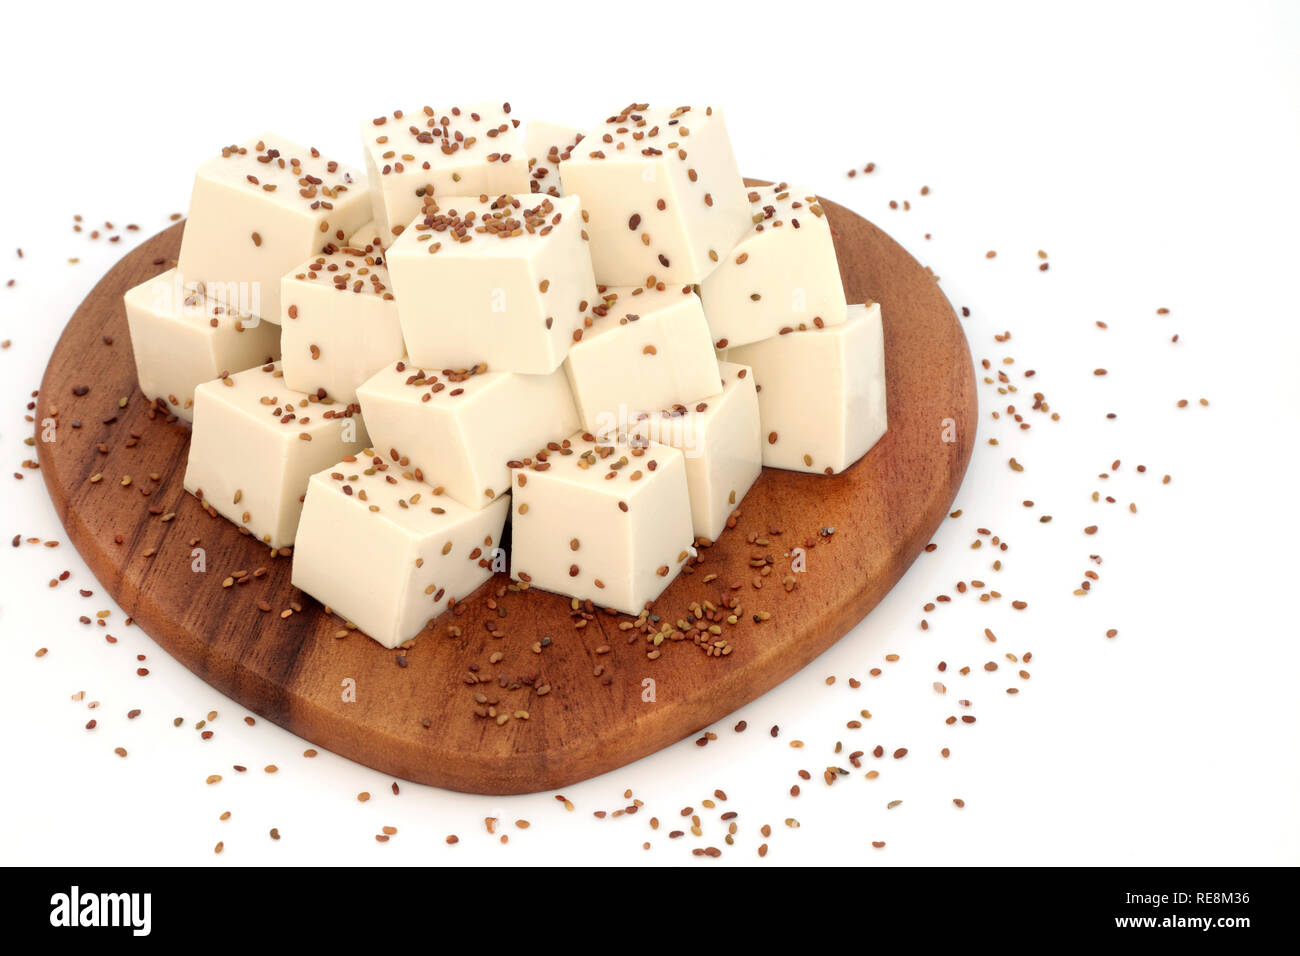 Le Tofu caillé saupoudrés de graines de luzerne sur une planche en bois sur fond blanc. Nourriture santé pour les végétaliens. Riche en protéines et d'oméga 3. Banque D'Images